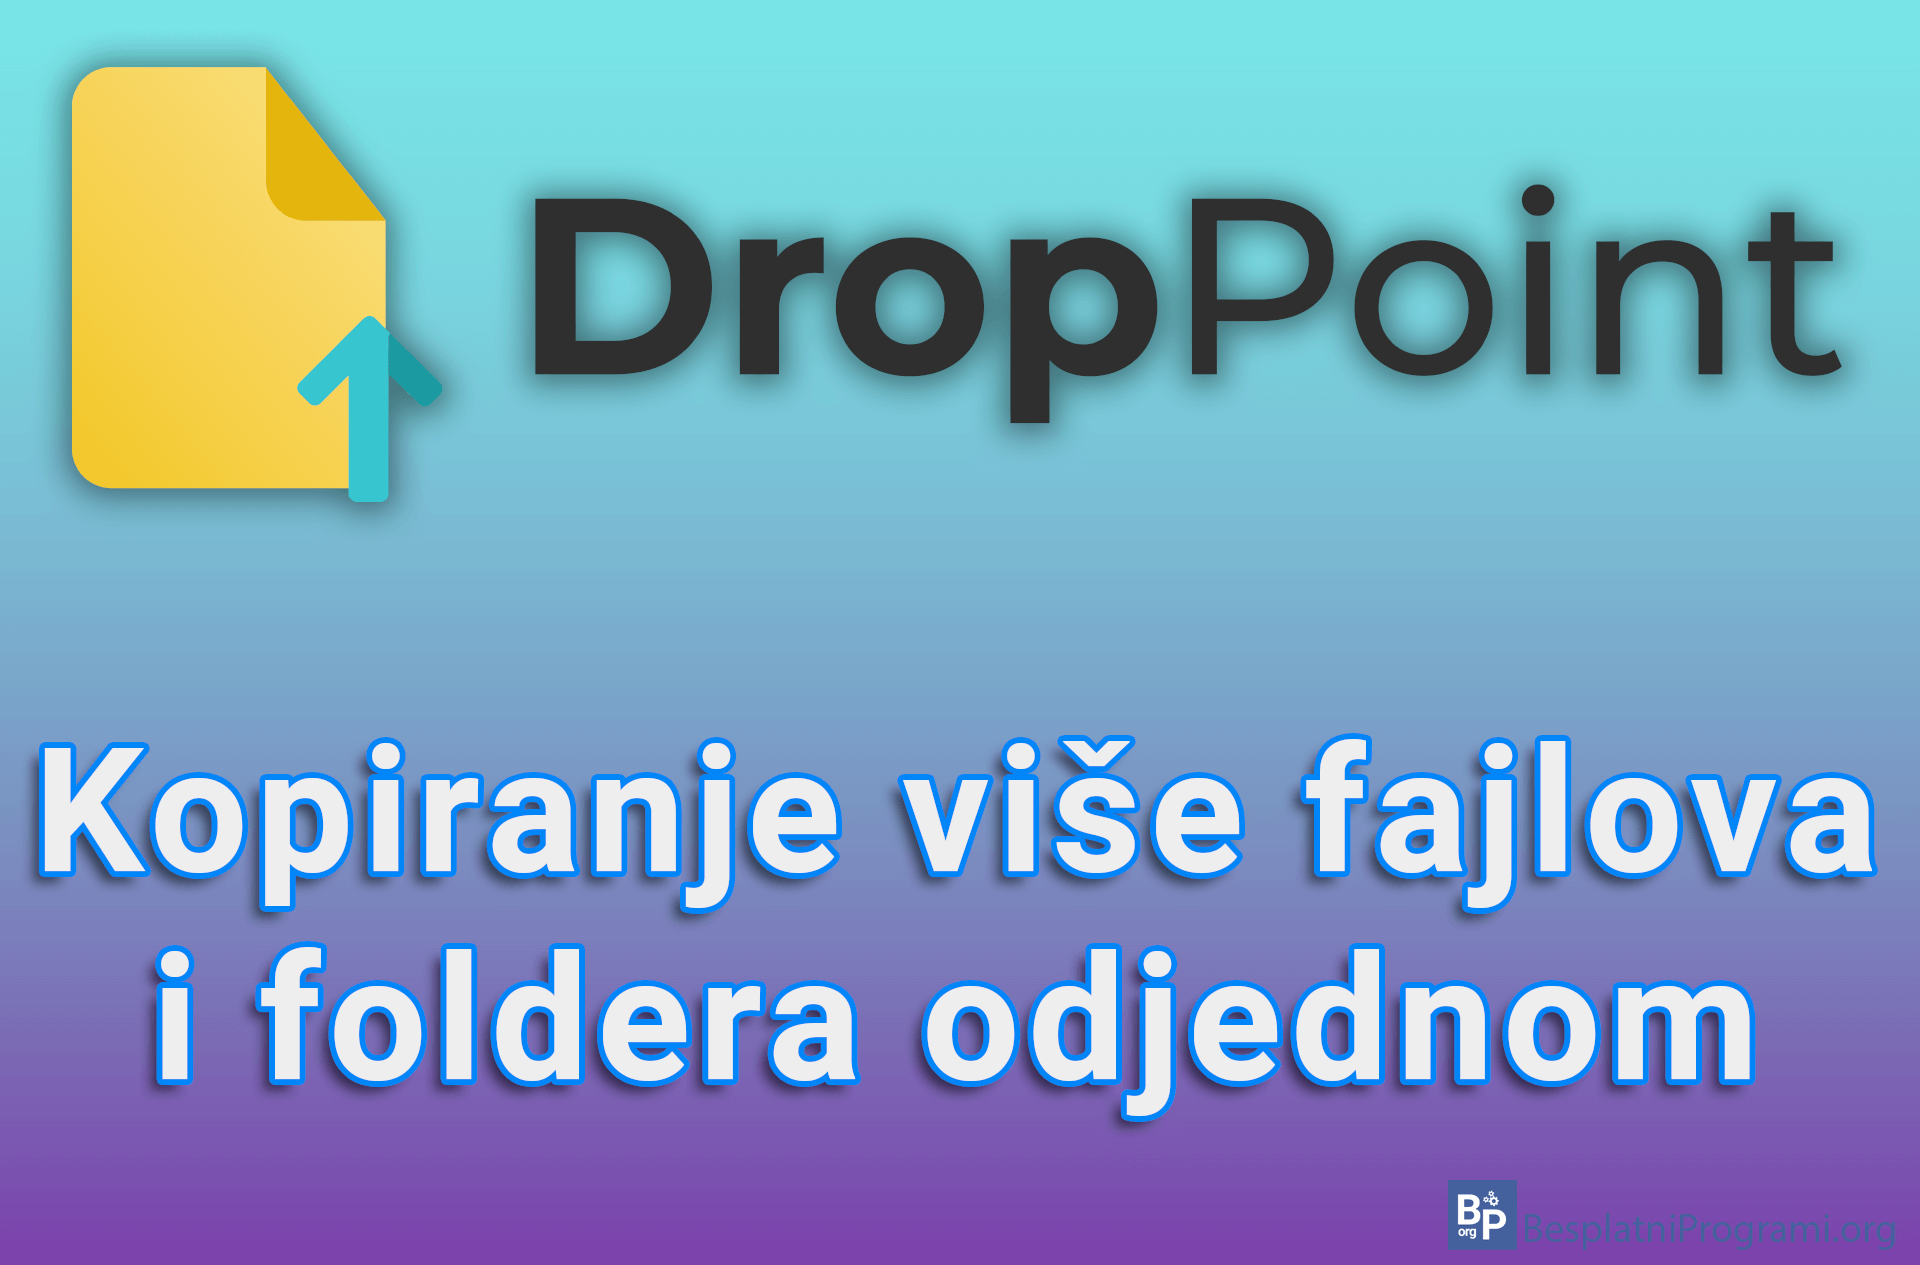 DropPoint – Kopiranje više fajlova i foldera odjednom